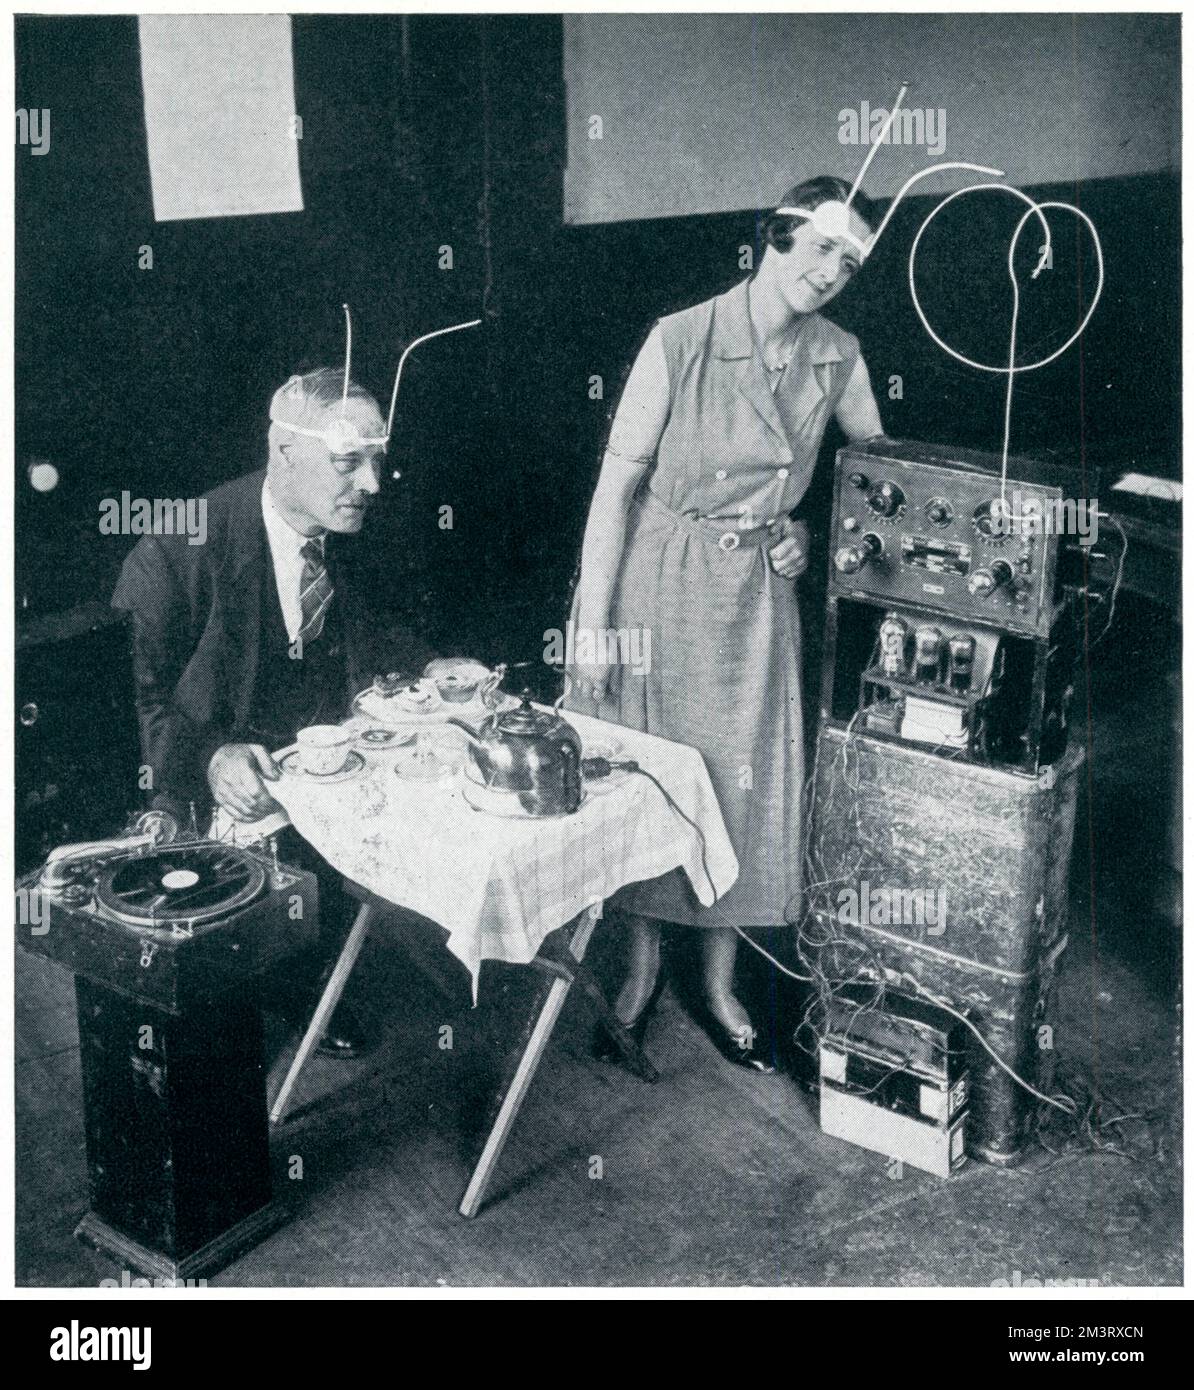 Major Raymond Phillips mit dem Apparat, mit dem er behauptete, ein elektrisches Grammophon oder Wasserkocher zu betreiben. Der menschliche Körper wirkte wie eine Erde, und die konstante Kapazität wurde in einem Abstand von 3 Metern zum Apparat gehalten. Ziemlich genial verrückt. Datum: 1932 Stockfoto